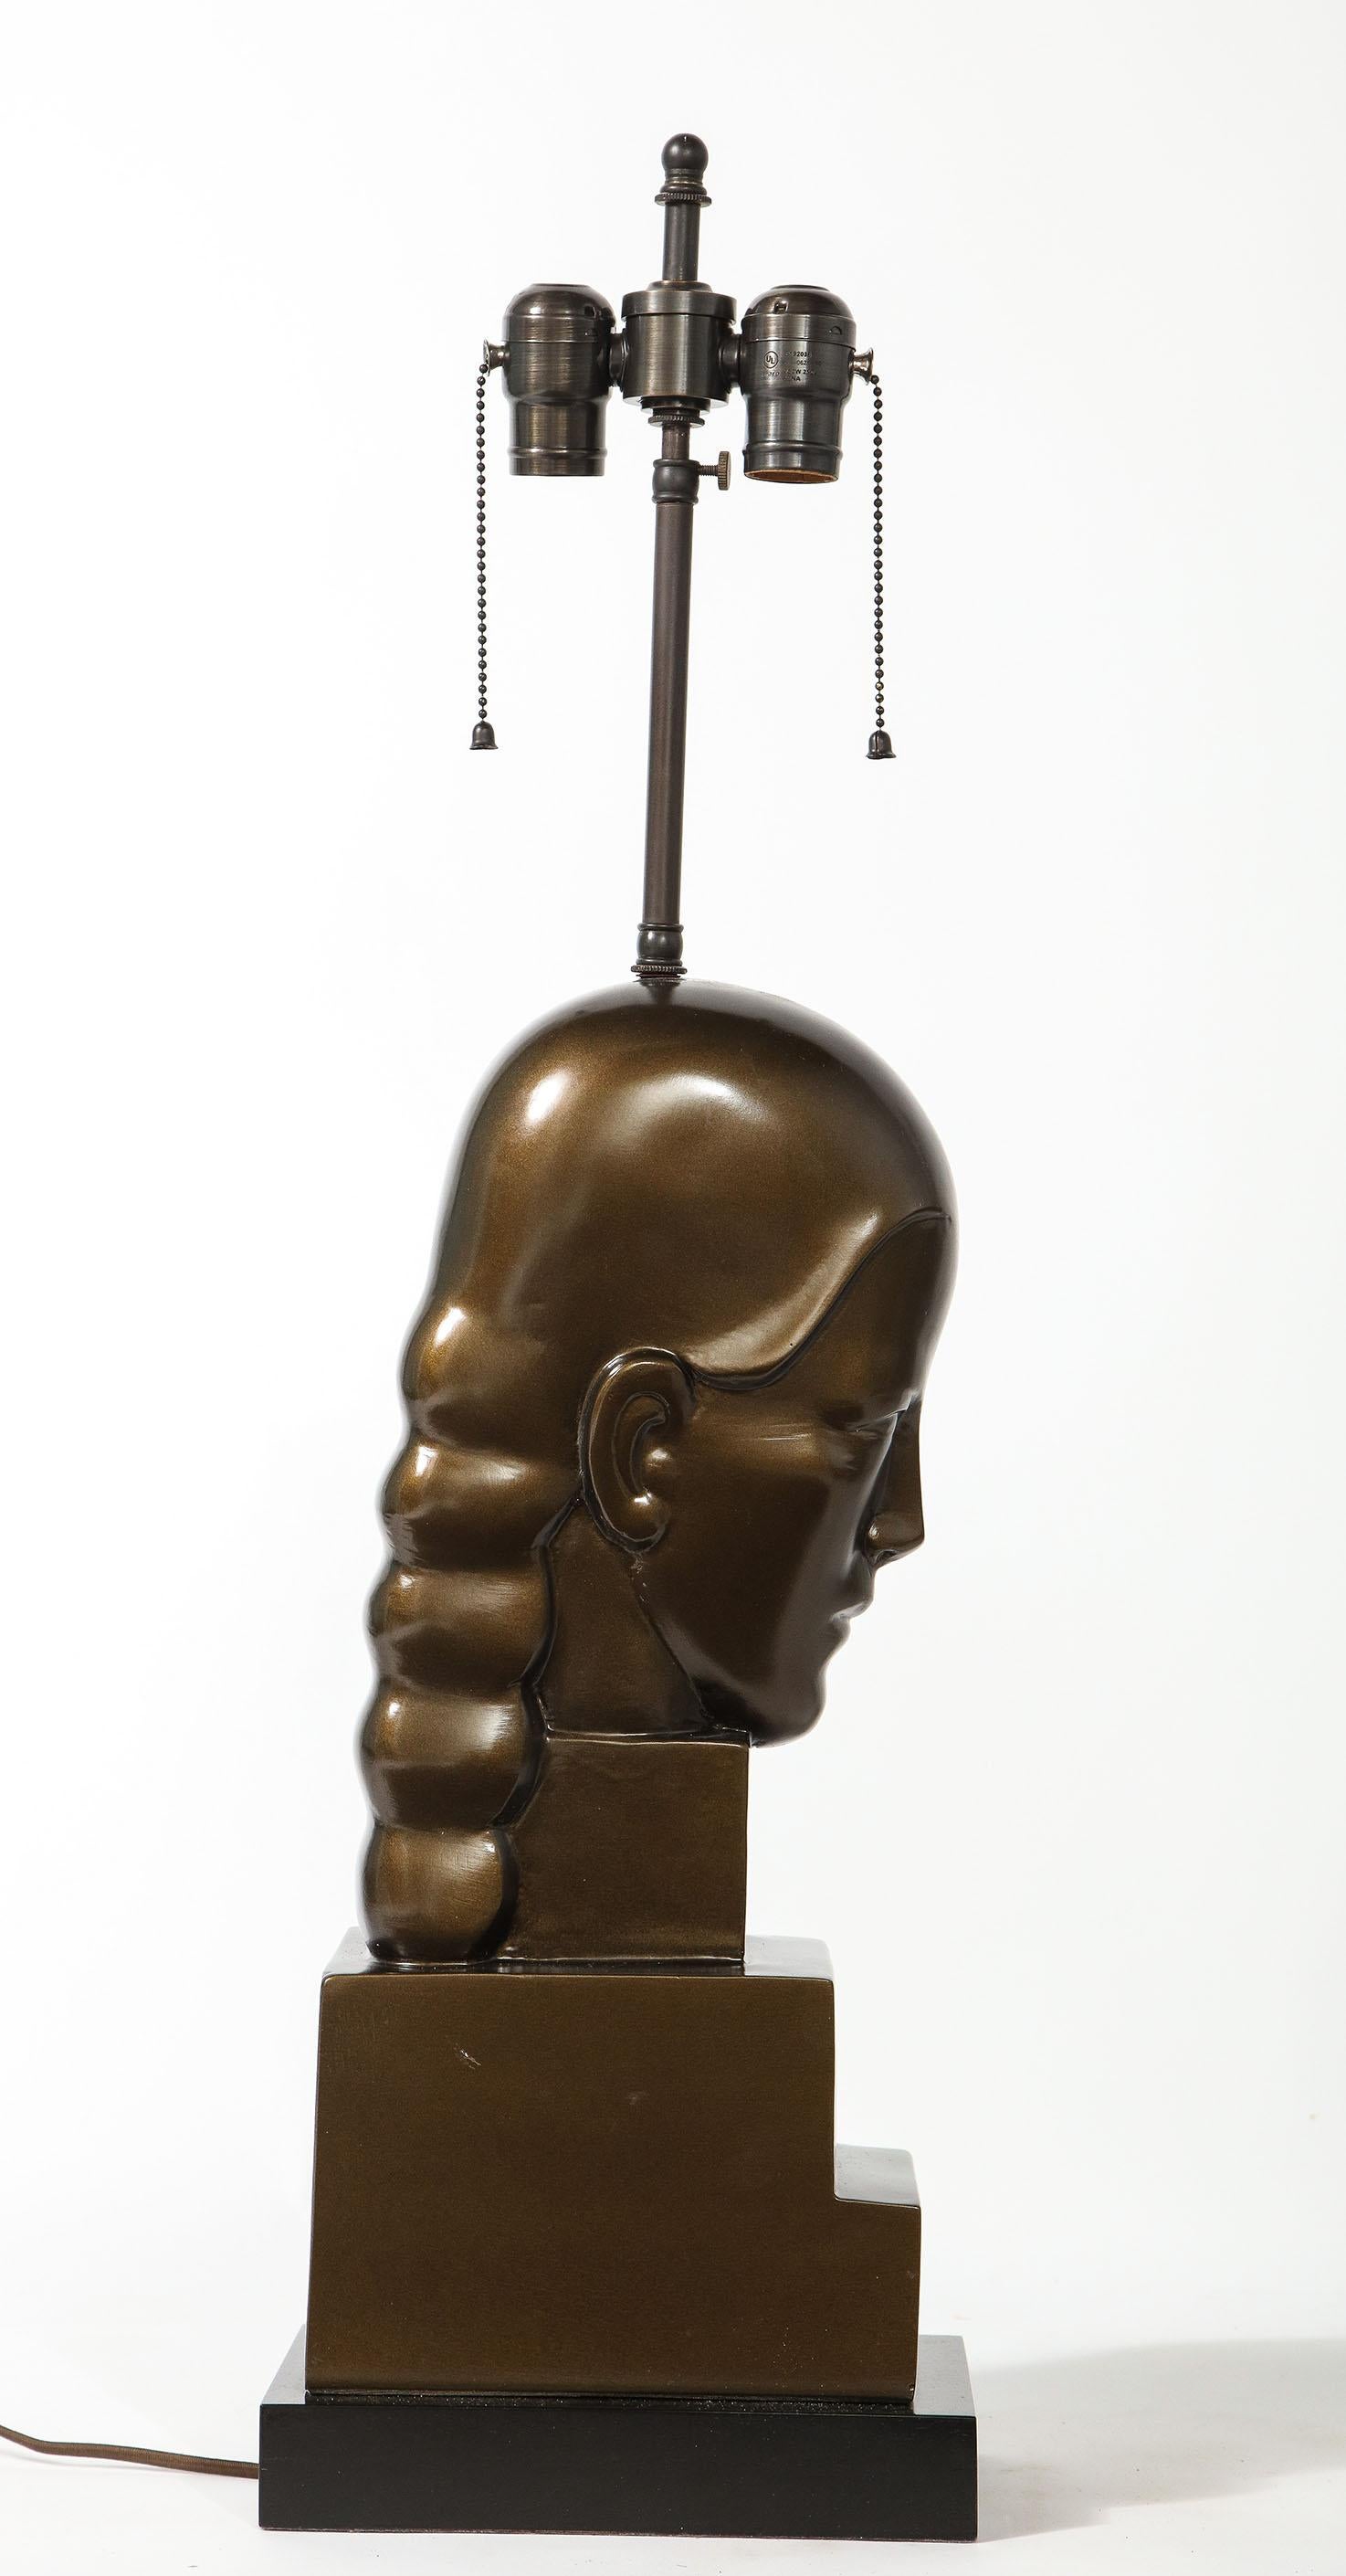 Le buste en bronze patiné d'une femme modelée dans un style Art déco sur un socle à gradins. Récemment câblé.